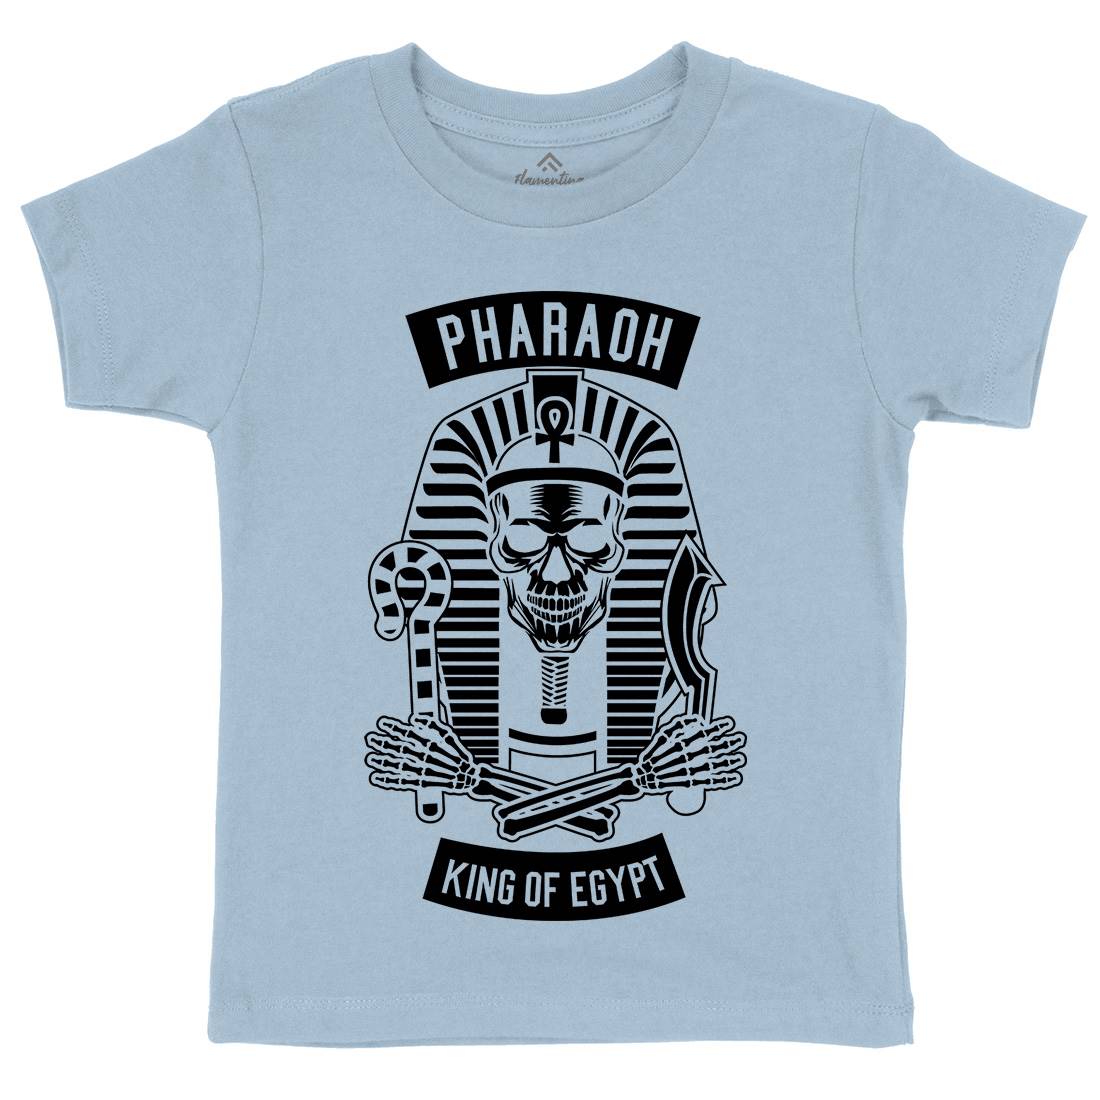 Pharaoh King Of Egypt Kids Crew Neck T-Shirt Religion B596